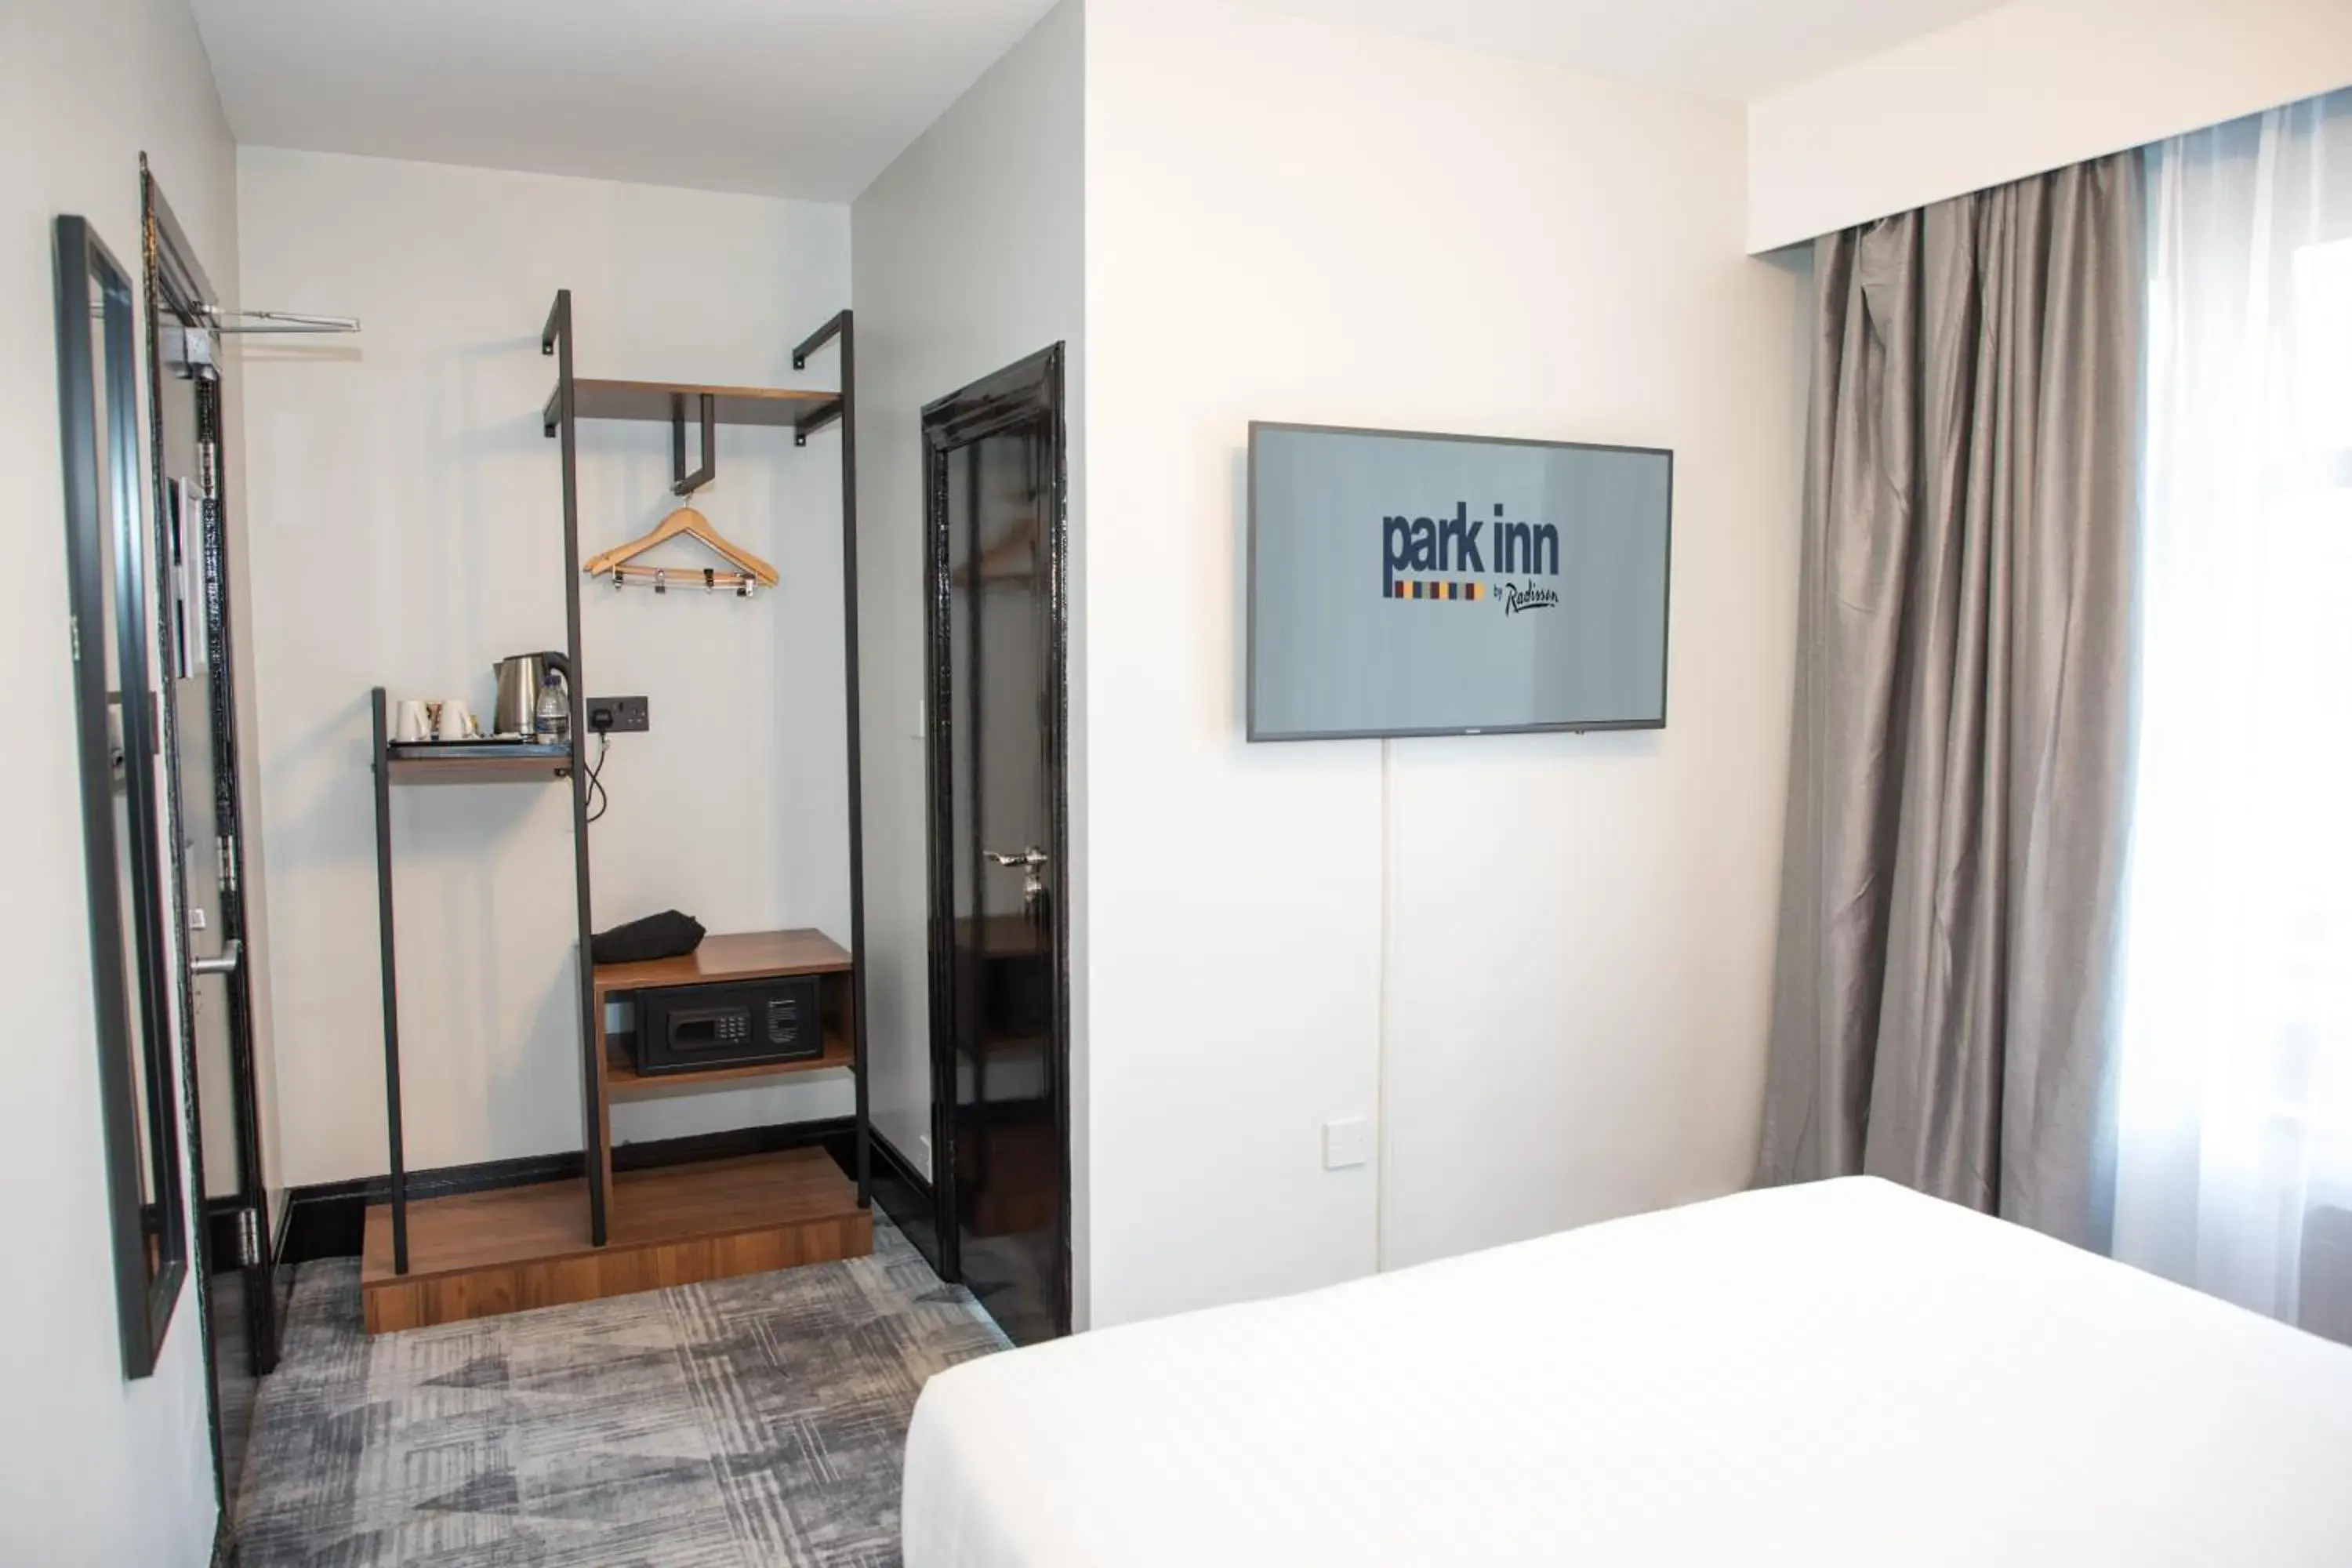 Bedroom, TV/Entertainment Center in Park Inn by Radisson Bournemouth